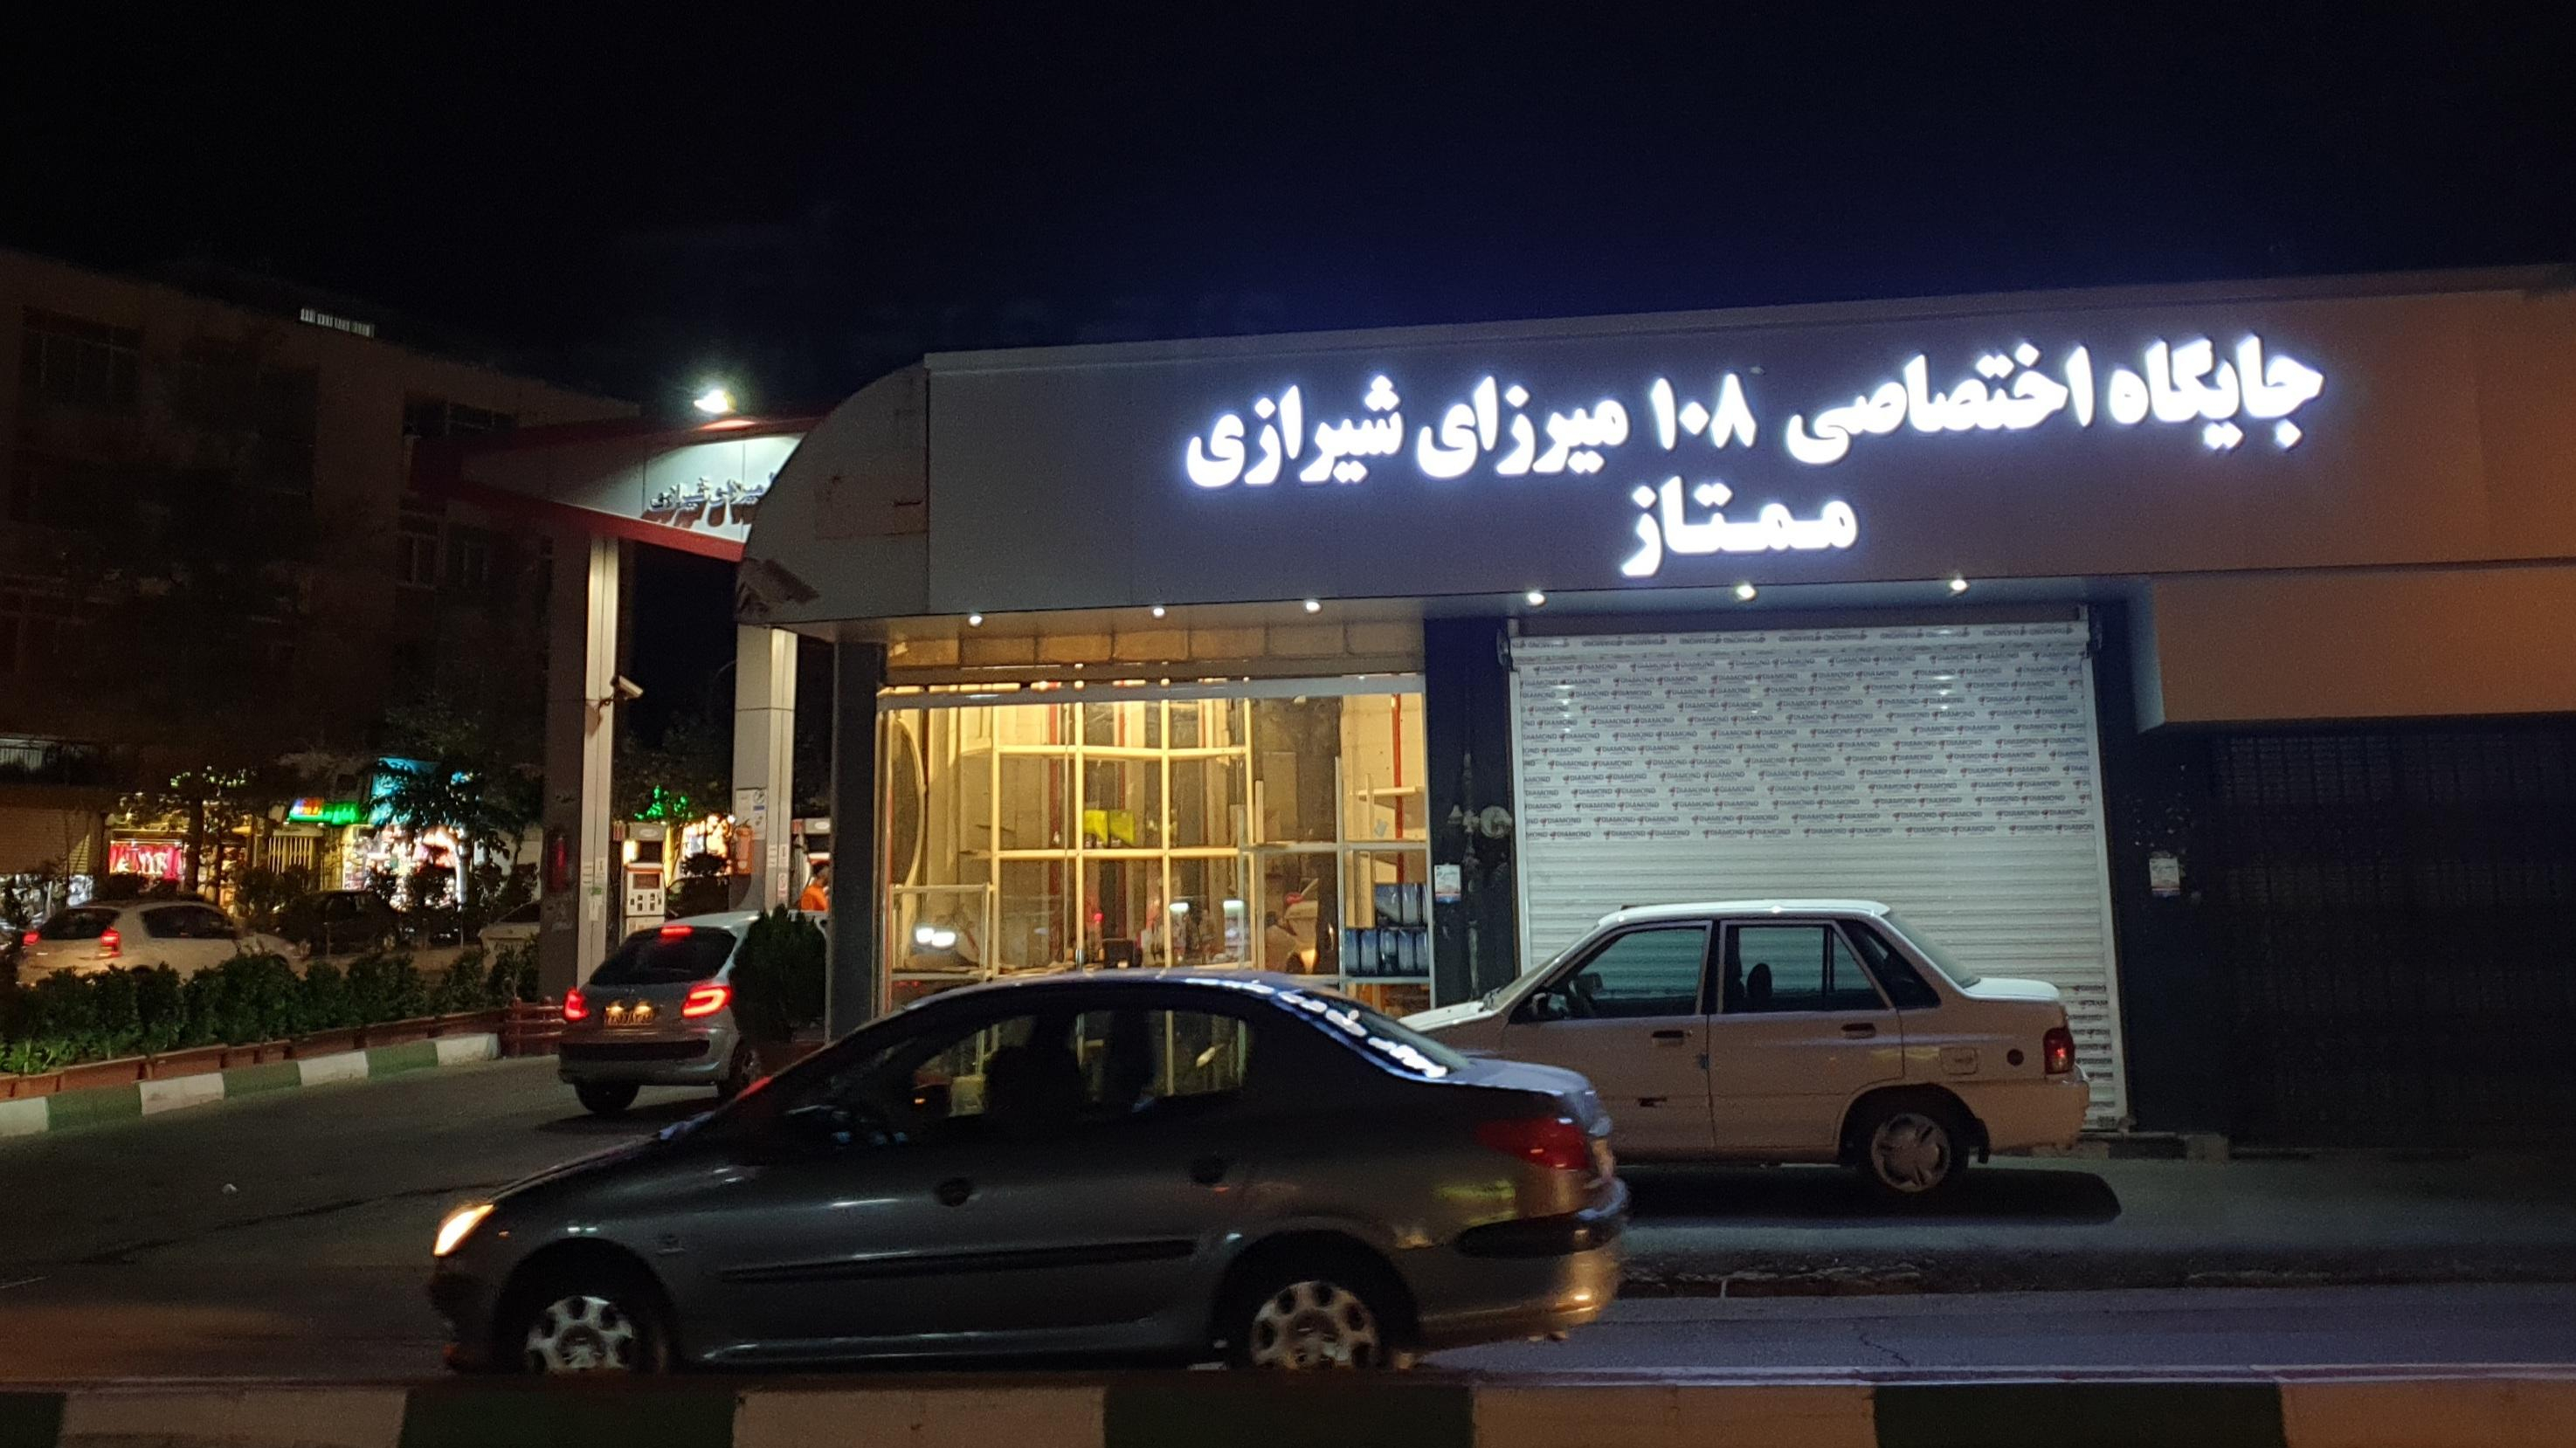 پمپ بنزین میرزای شیرازی شماره ۱۰۸